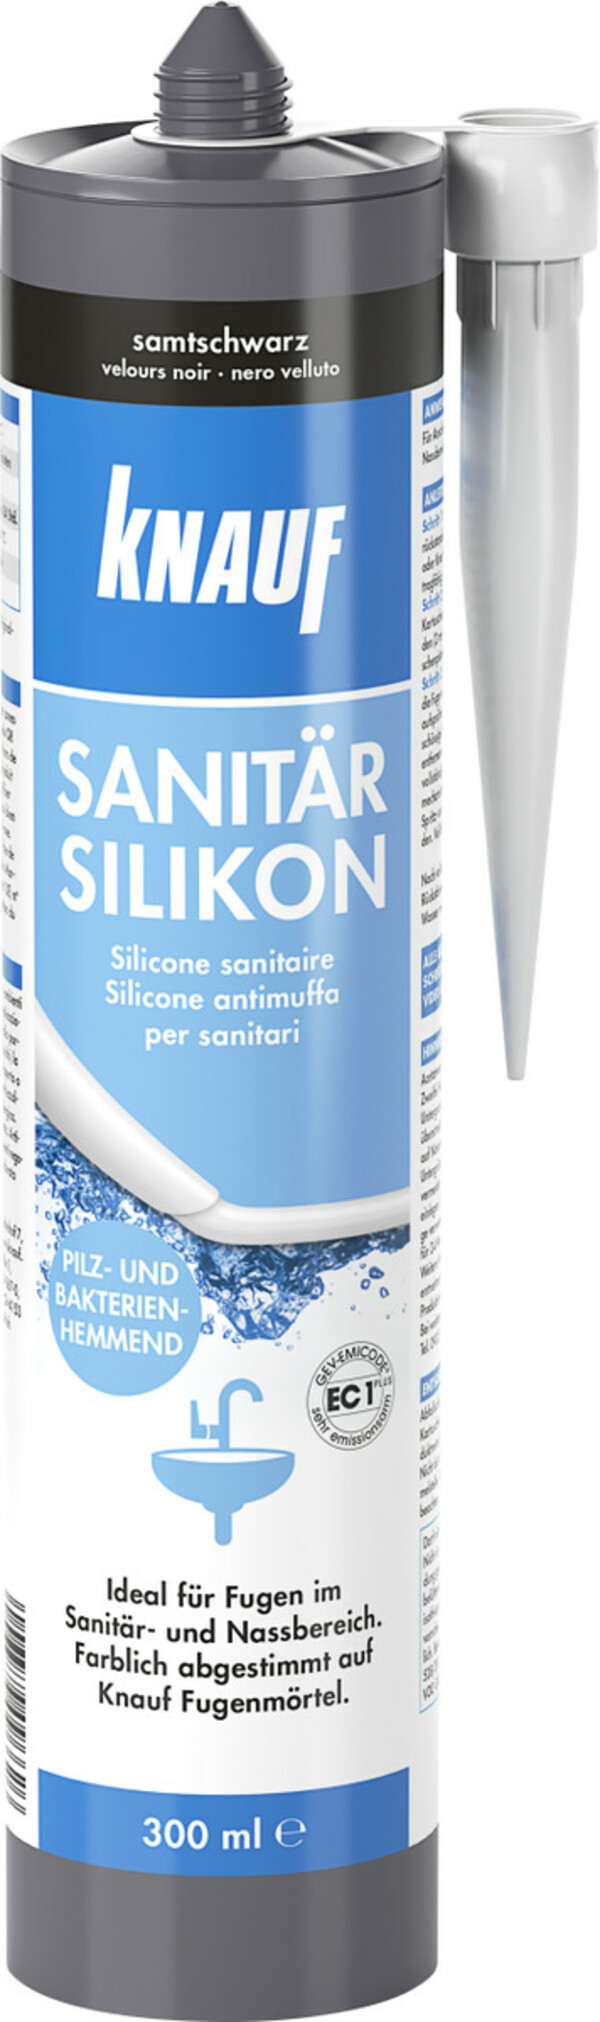 Bild 1 von Knauf Sanitär-Silikon
, 
samtschwarz, 300 ml